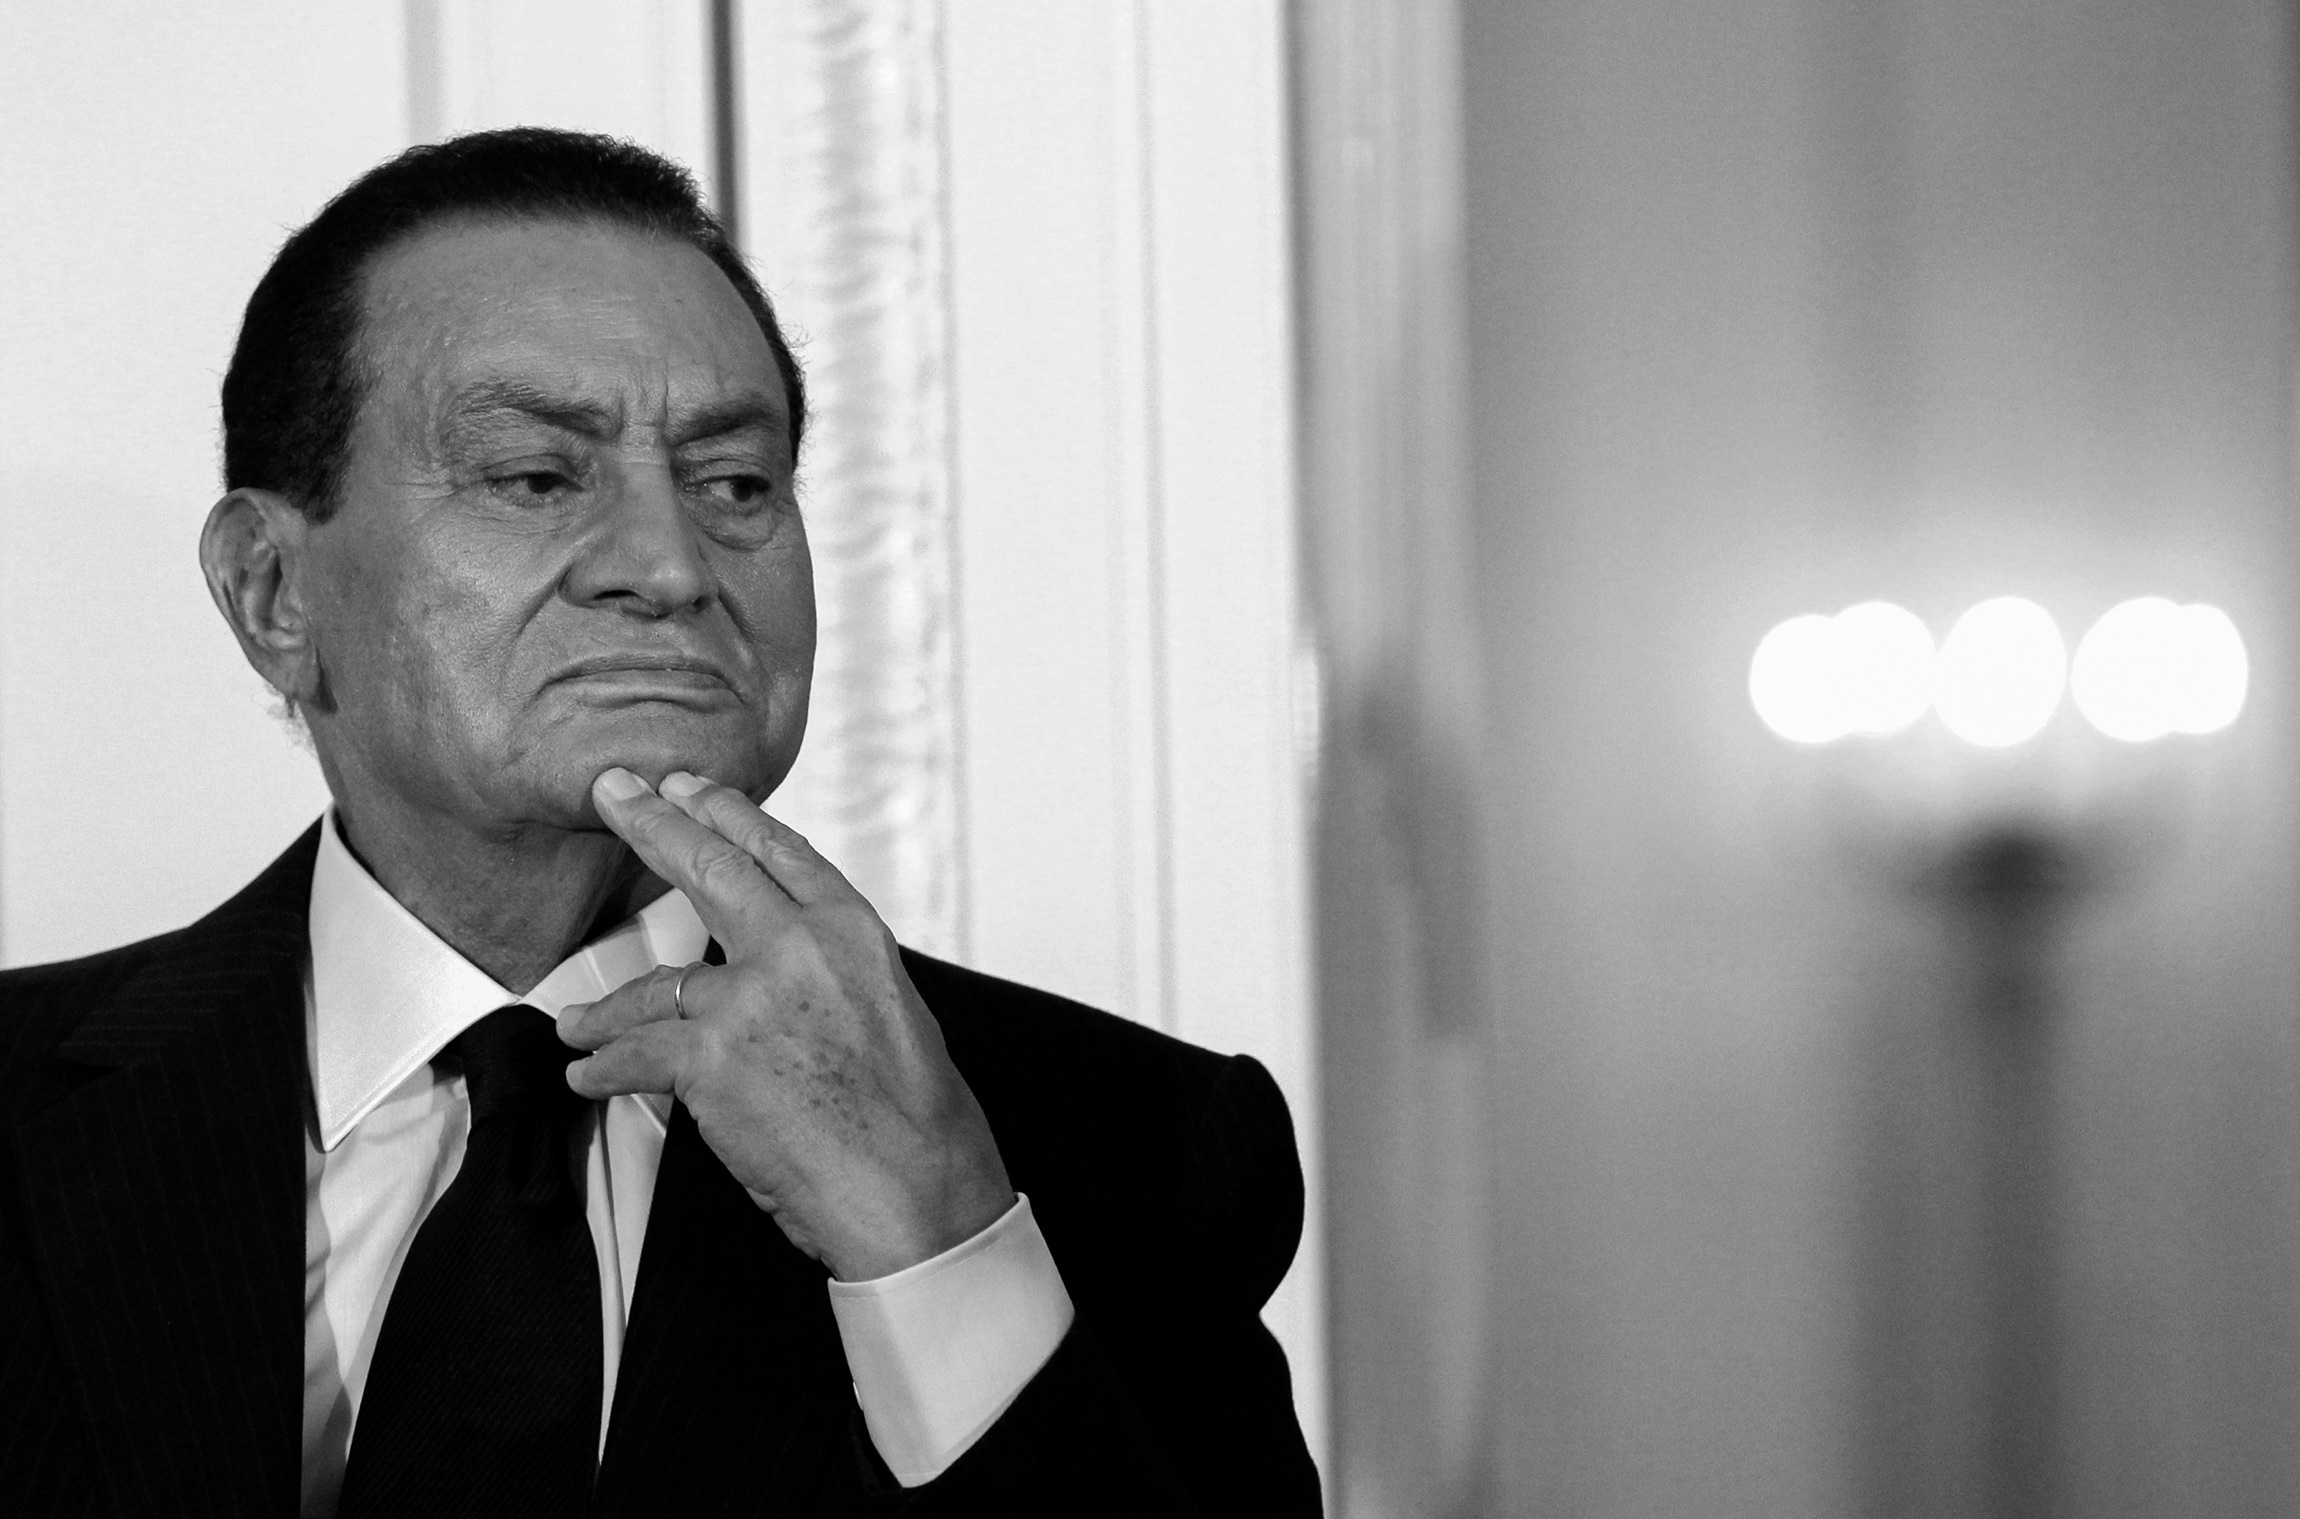 Мубарак&nbsp;строил военную карьеру, принимал участие в Суэцкой войне в 1956 году и в арабо-израильской&nbsp;&mdash; в 1967-м. В 1975 году стал вице-президентом при египетском лидере Анваре Садате. Через шесть лет, после убийства Садата исламистами во время военного парада, стал президентом и ввел в стране чрезвычайное положение. Мубарак неоднократно переизбирался на президентский пост в ходе референдумов, голосование всегда проходило по единственной кандидатуре. В первые годы&nbsp;власти боролся с коррупцией и исламистами, тогда же&nbsp;были смягчены условия деятельности оппозиционных партий. В 2011 году сложил с себя президентские полномочия на фоне протестов. Египтяне&nbsp;требовали смены власти и решения социально-экономических проблем. Мубарака&nbsp;обвинили в причастности к гибели демонстрантов и приговорили к пожизненному заключению. Также экс-президенту вменялись коррупционные преступления. В 2017 году Кассационный суд снял с него обвинения в гибели протестующих, и все уголовные преследования завершились.

Мубарак умер 25 февраля на 92-м году жизни. Последние годы он тяжело болел

Читать больше